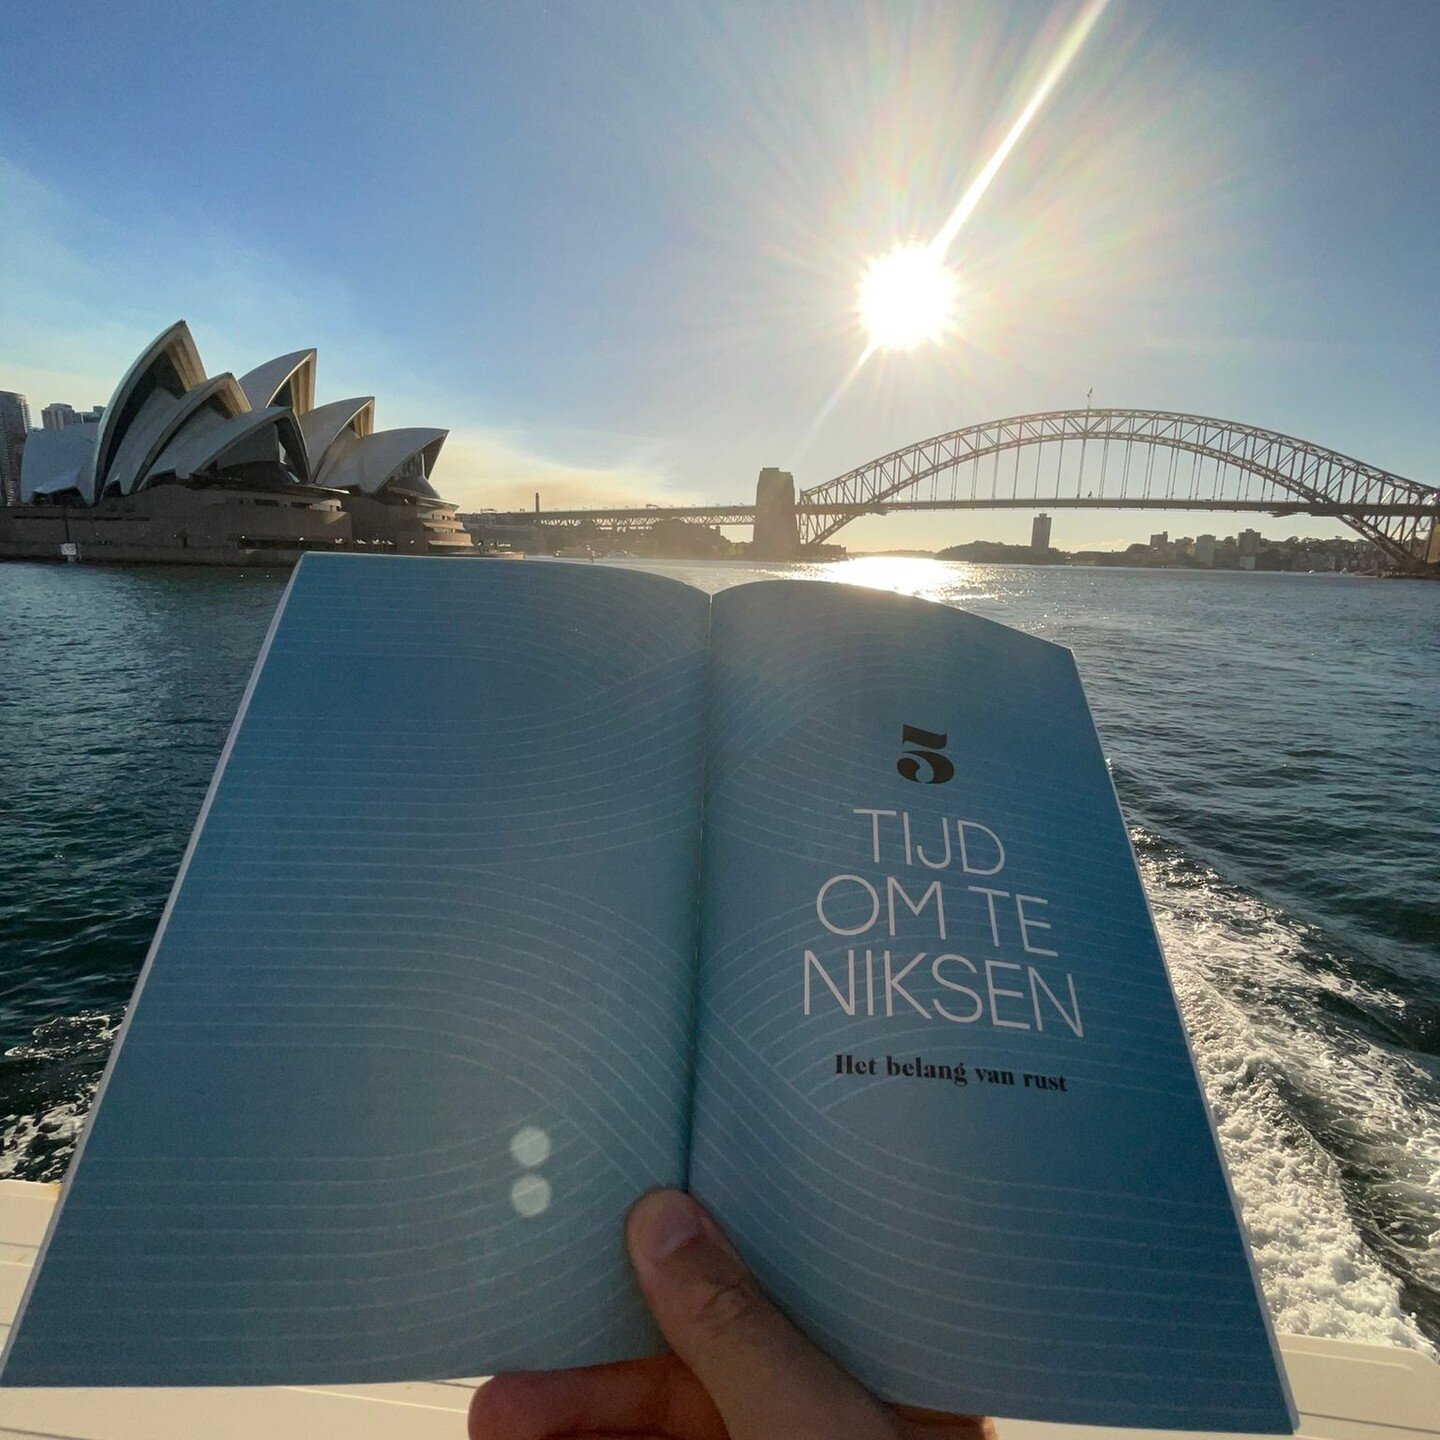 Mijn boek op mijn favoriete plek in de wereld: Sydney. Dankjewel, @coen_hrrvts en @annemarije.bakker!

Sydney, mijn lievelingsplek, de plek waar het allemaal begon... het realiseren van dromen.

Jop en ik startten daar ons trainingsbureau. We huurden